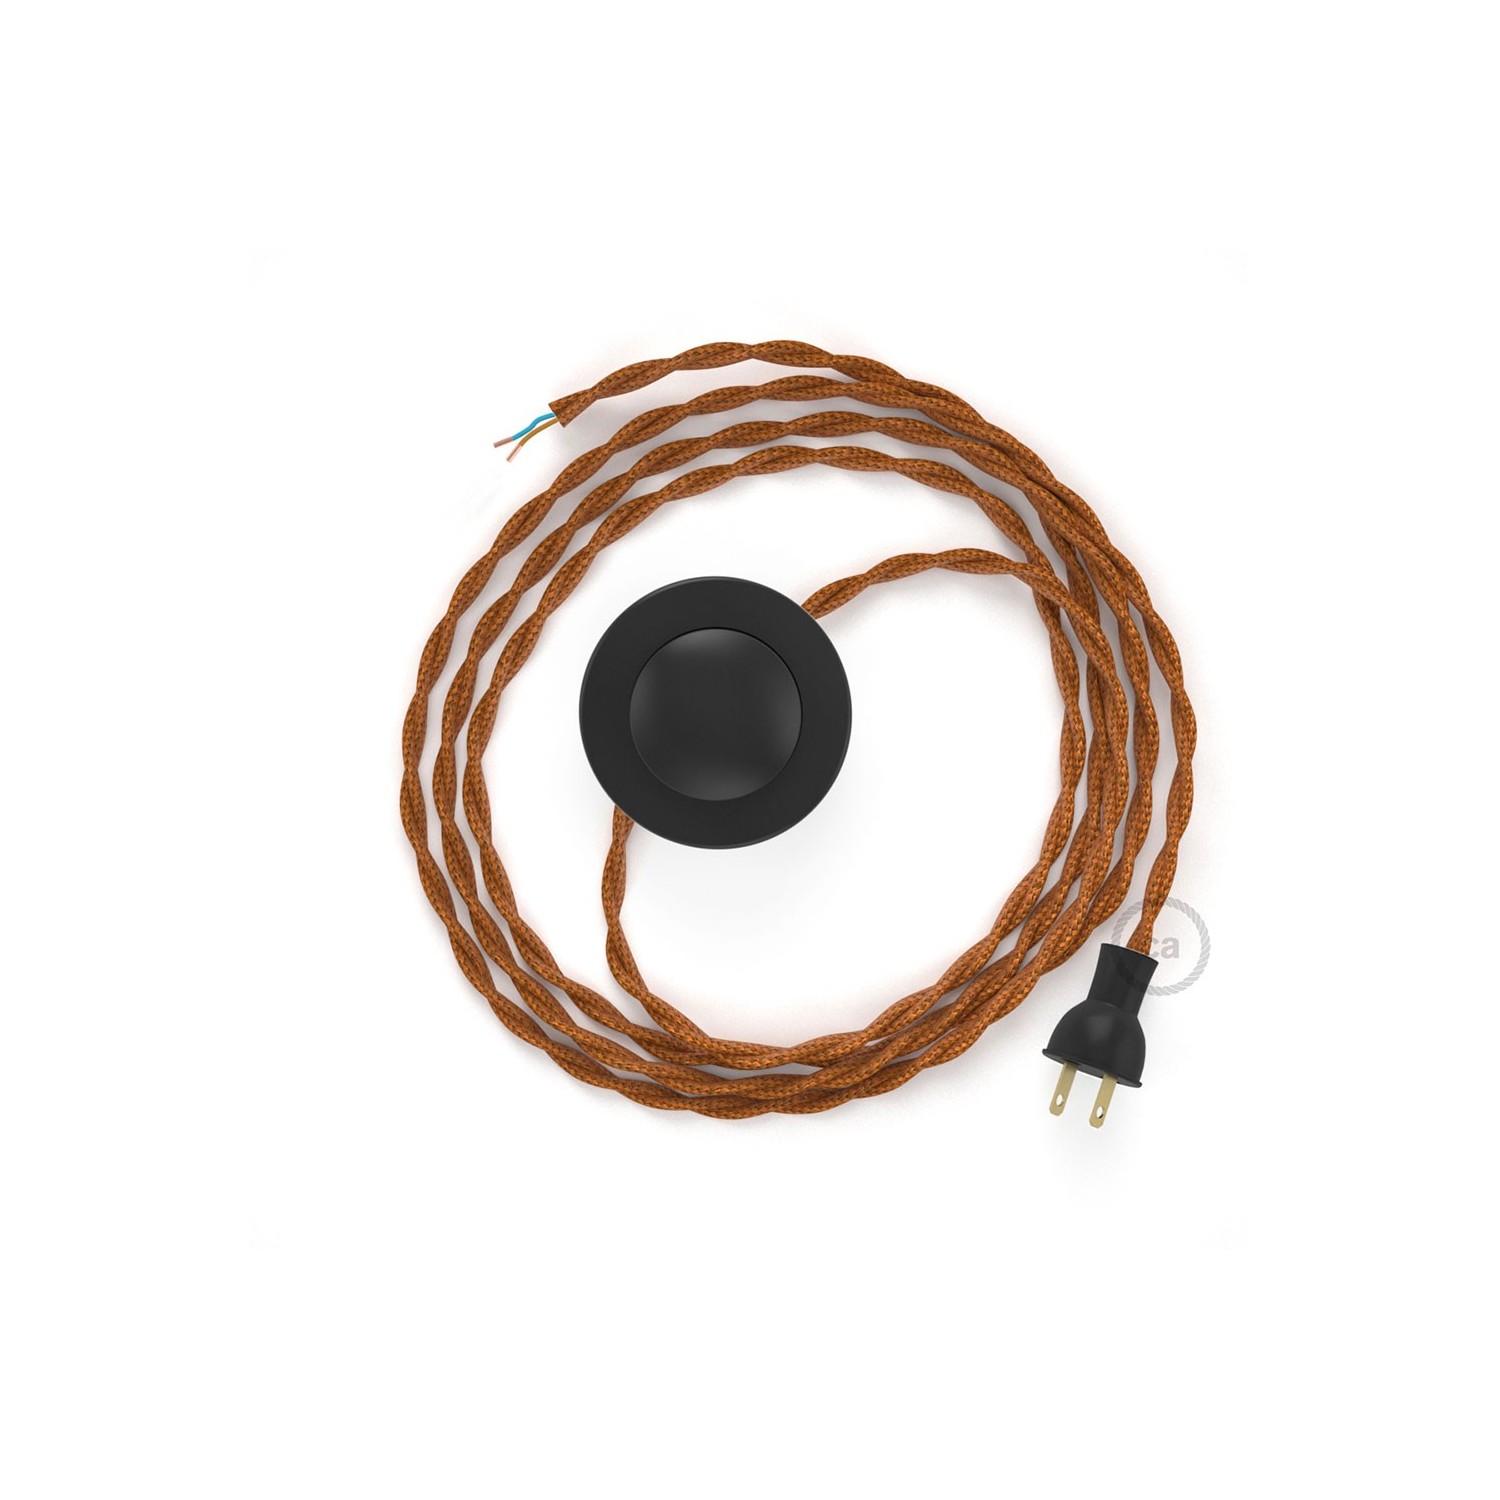 Cableado para lámpara de piso, cable TM22 Rayón Whisky 3 m. Elige tu el color de la clavija y del interruptor!